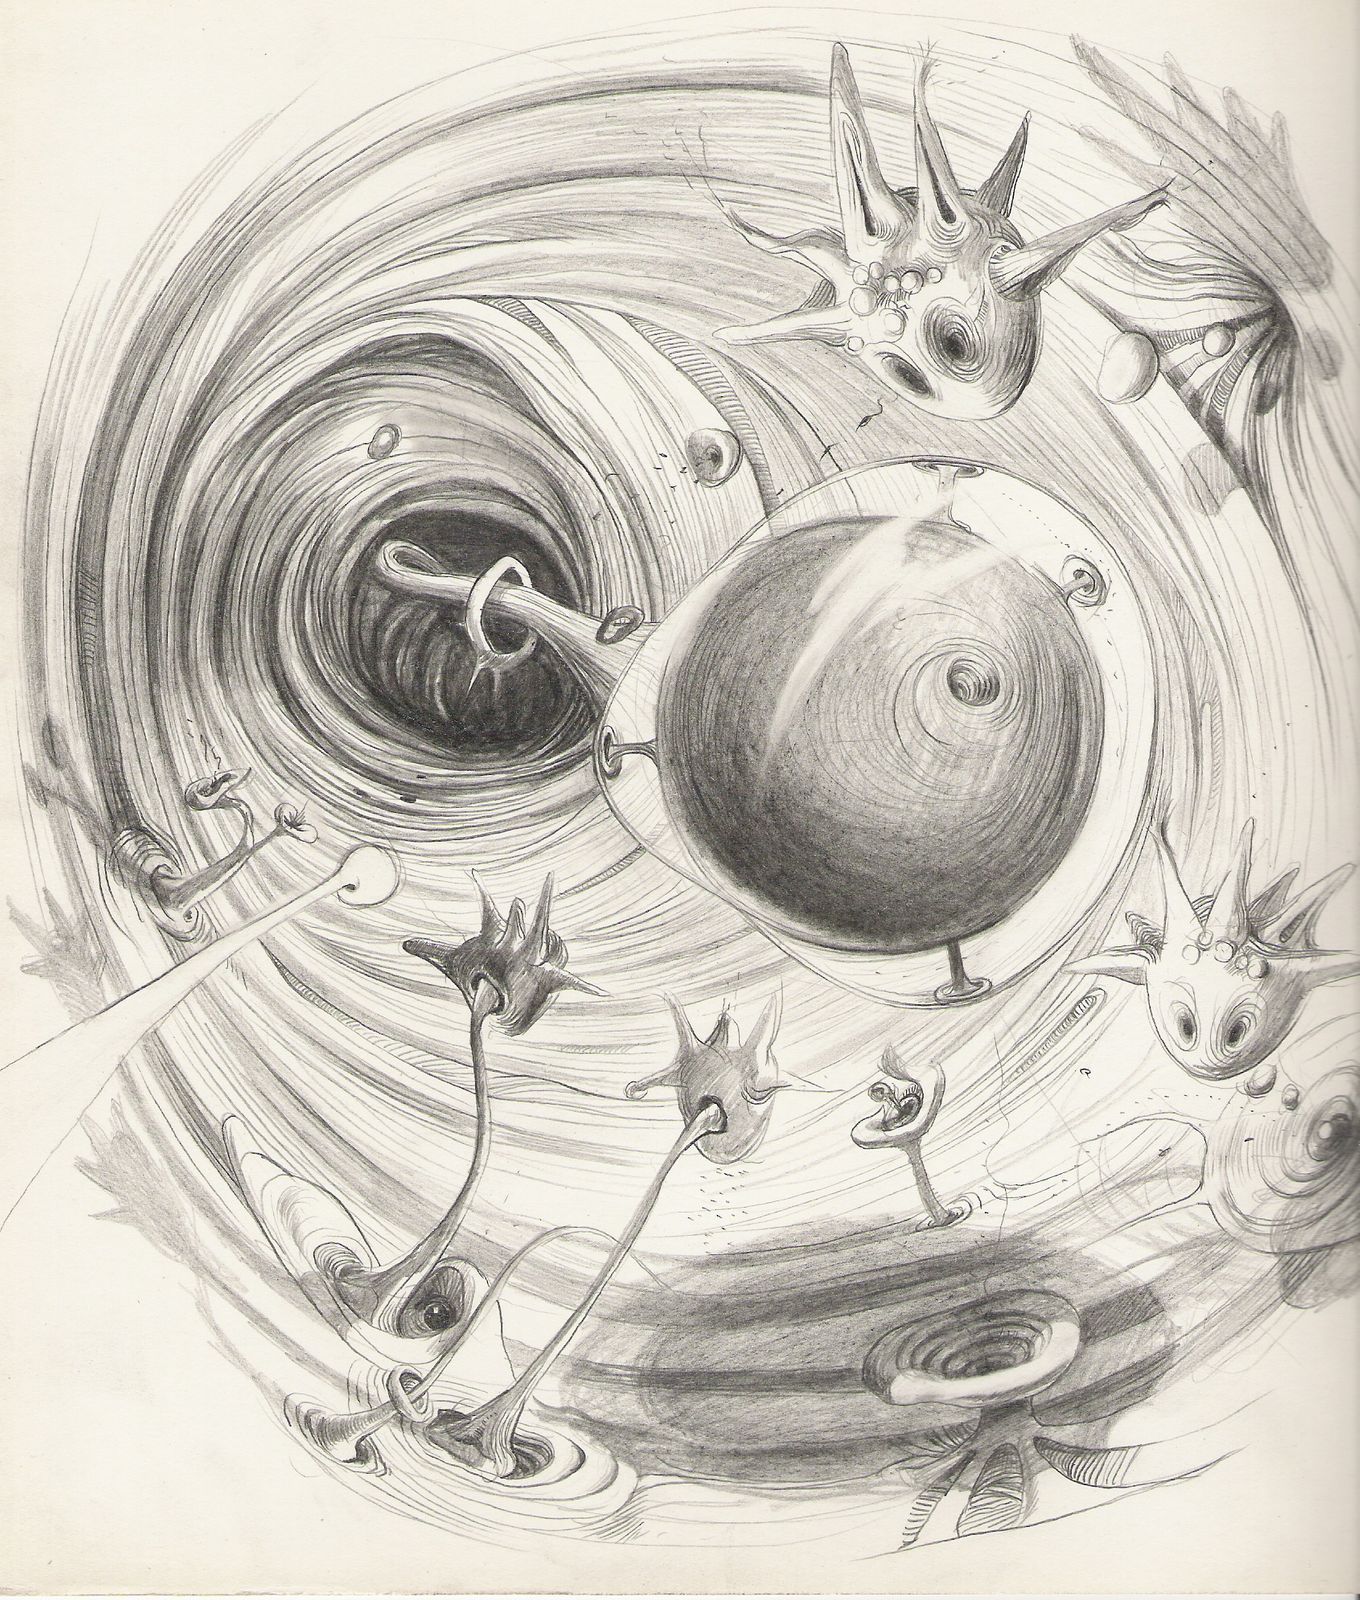 Žíla, ilustrace do knihy Nanobook, 2004, 27 x 22 cm